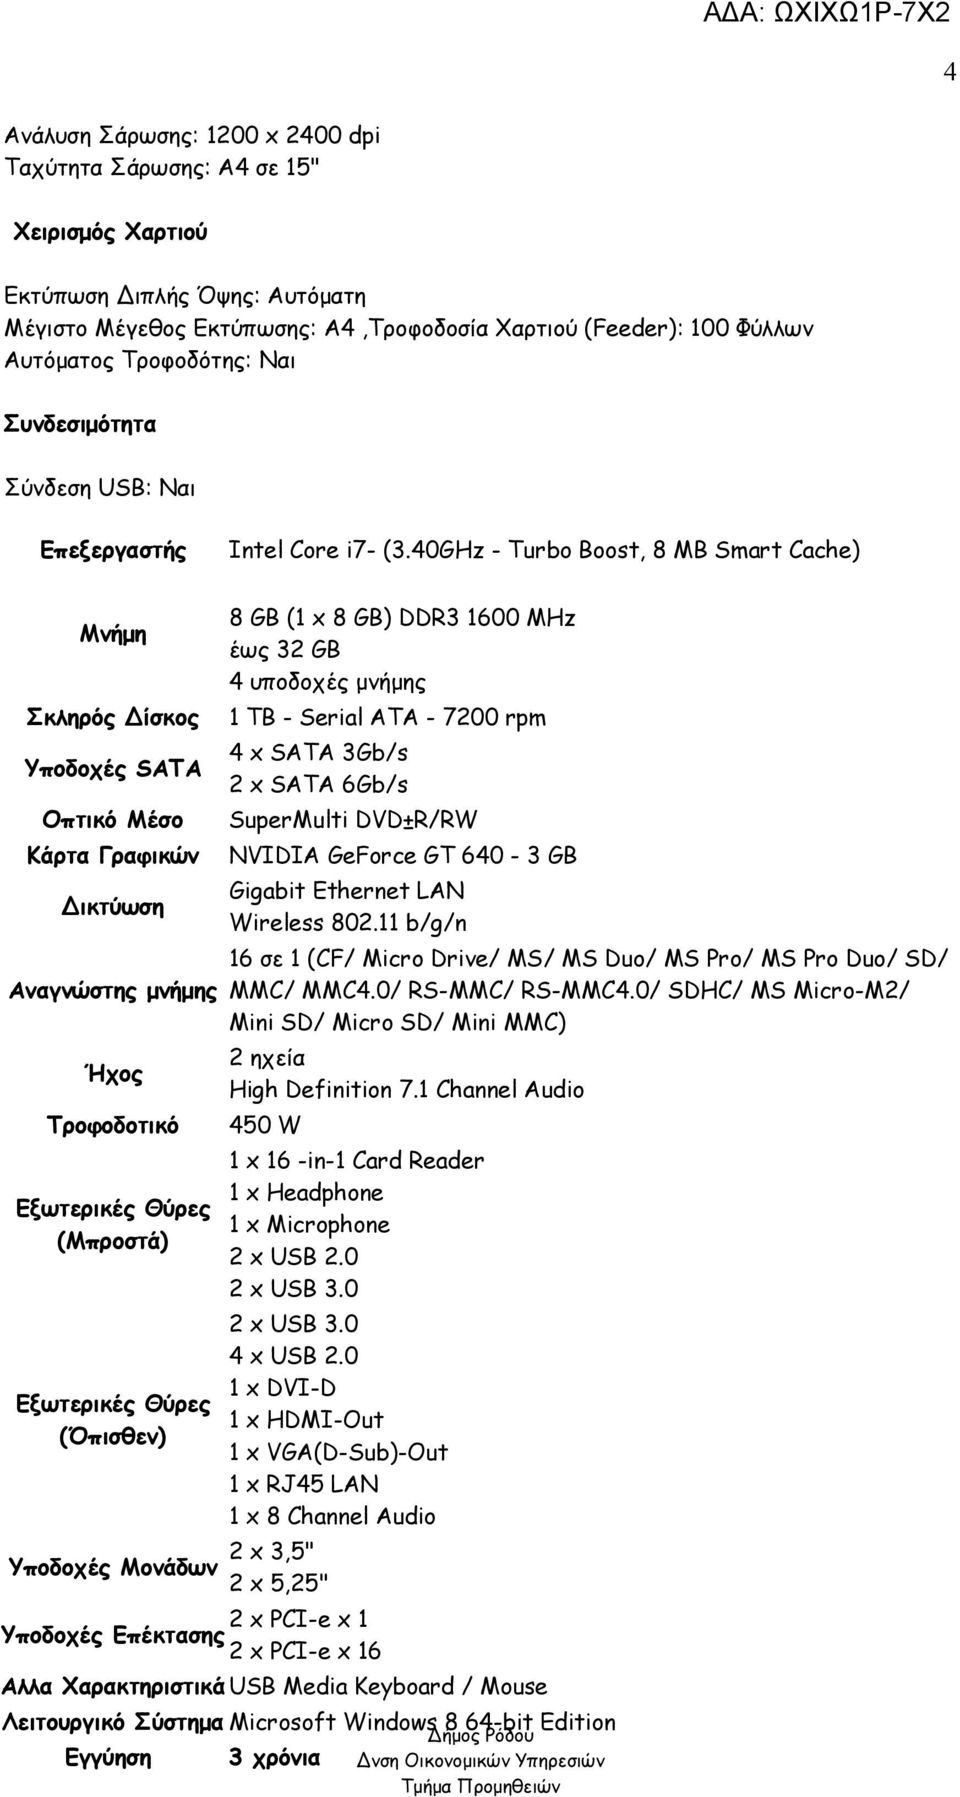 40GHz - Turbo Boost, 8 MB Smart Cache) Μνήμη Σκληρός Δίσκος Υποδοχές SATA Οπτικό Μέσο Κάρτα Γραφικών Δικτύωση Αναγνώστης μνήμης Ήχος Τροφοδοτικό Εξωτερικές Θύρες (Μπροστά) Εξωτερικές Θύρες (Όπισθεν)